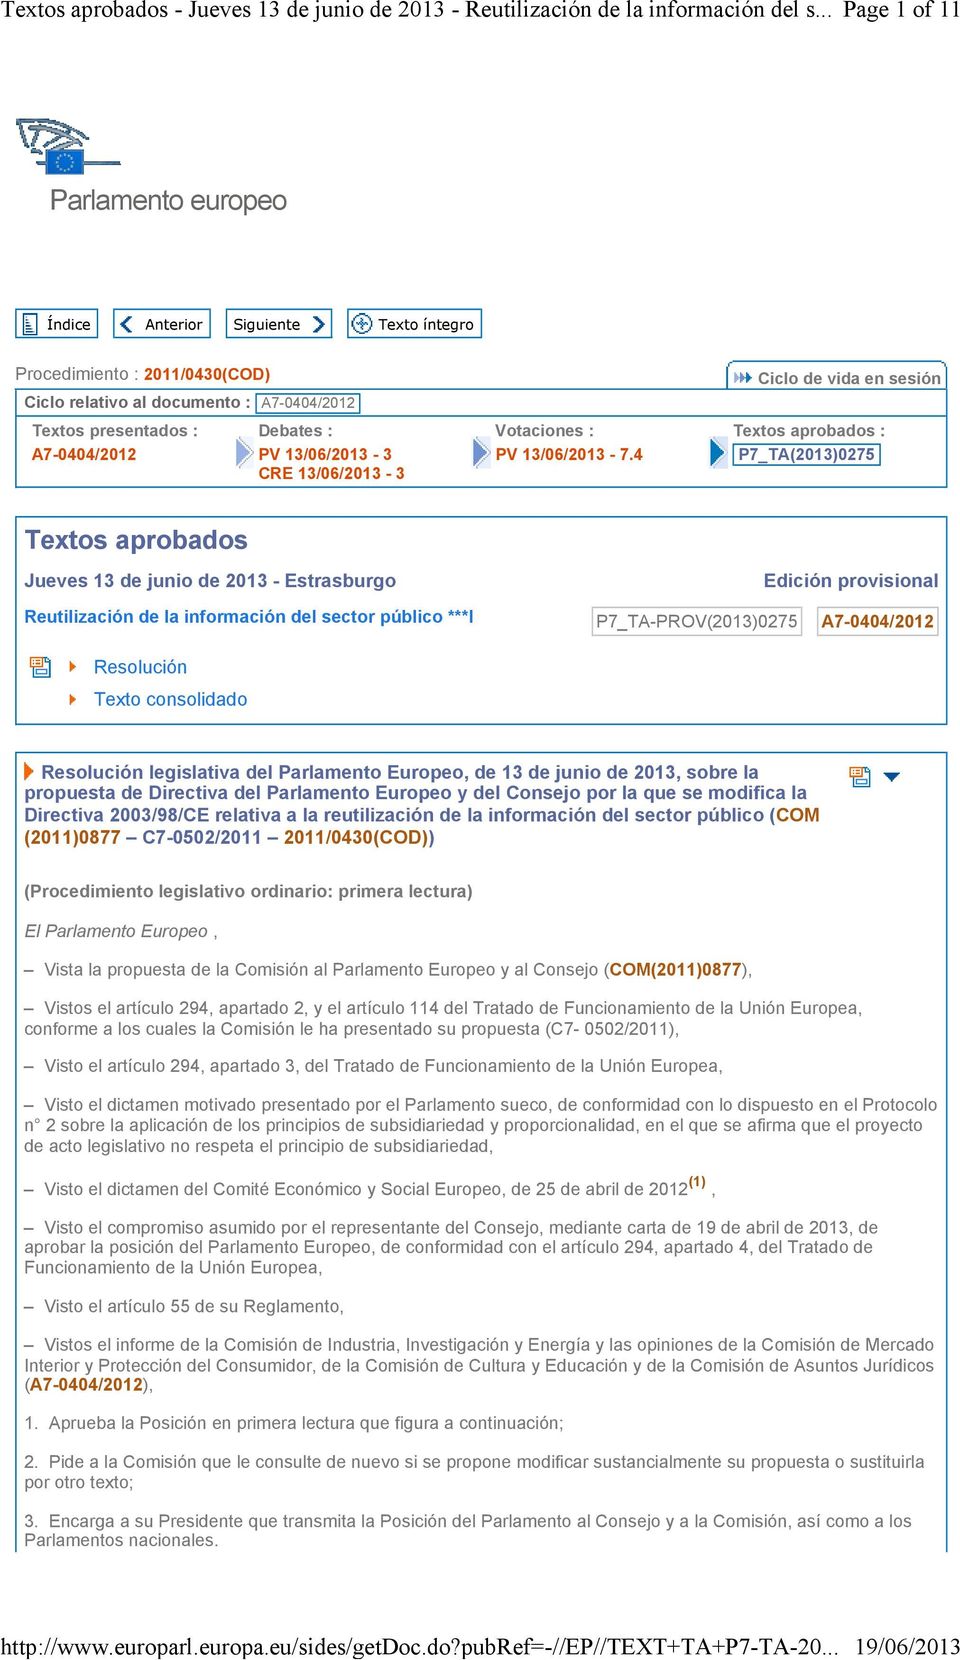 4 Ciclo de vida en sesión Textos aprobados : P7_TA(2013)0275 Textos aprobados Jueves 13 de junio de 2013 - Estrasburgo Edición provisional Reutilización de la información del sector público ***I